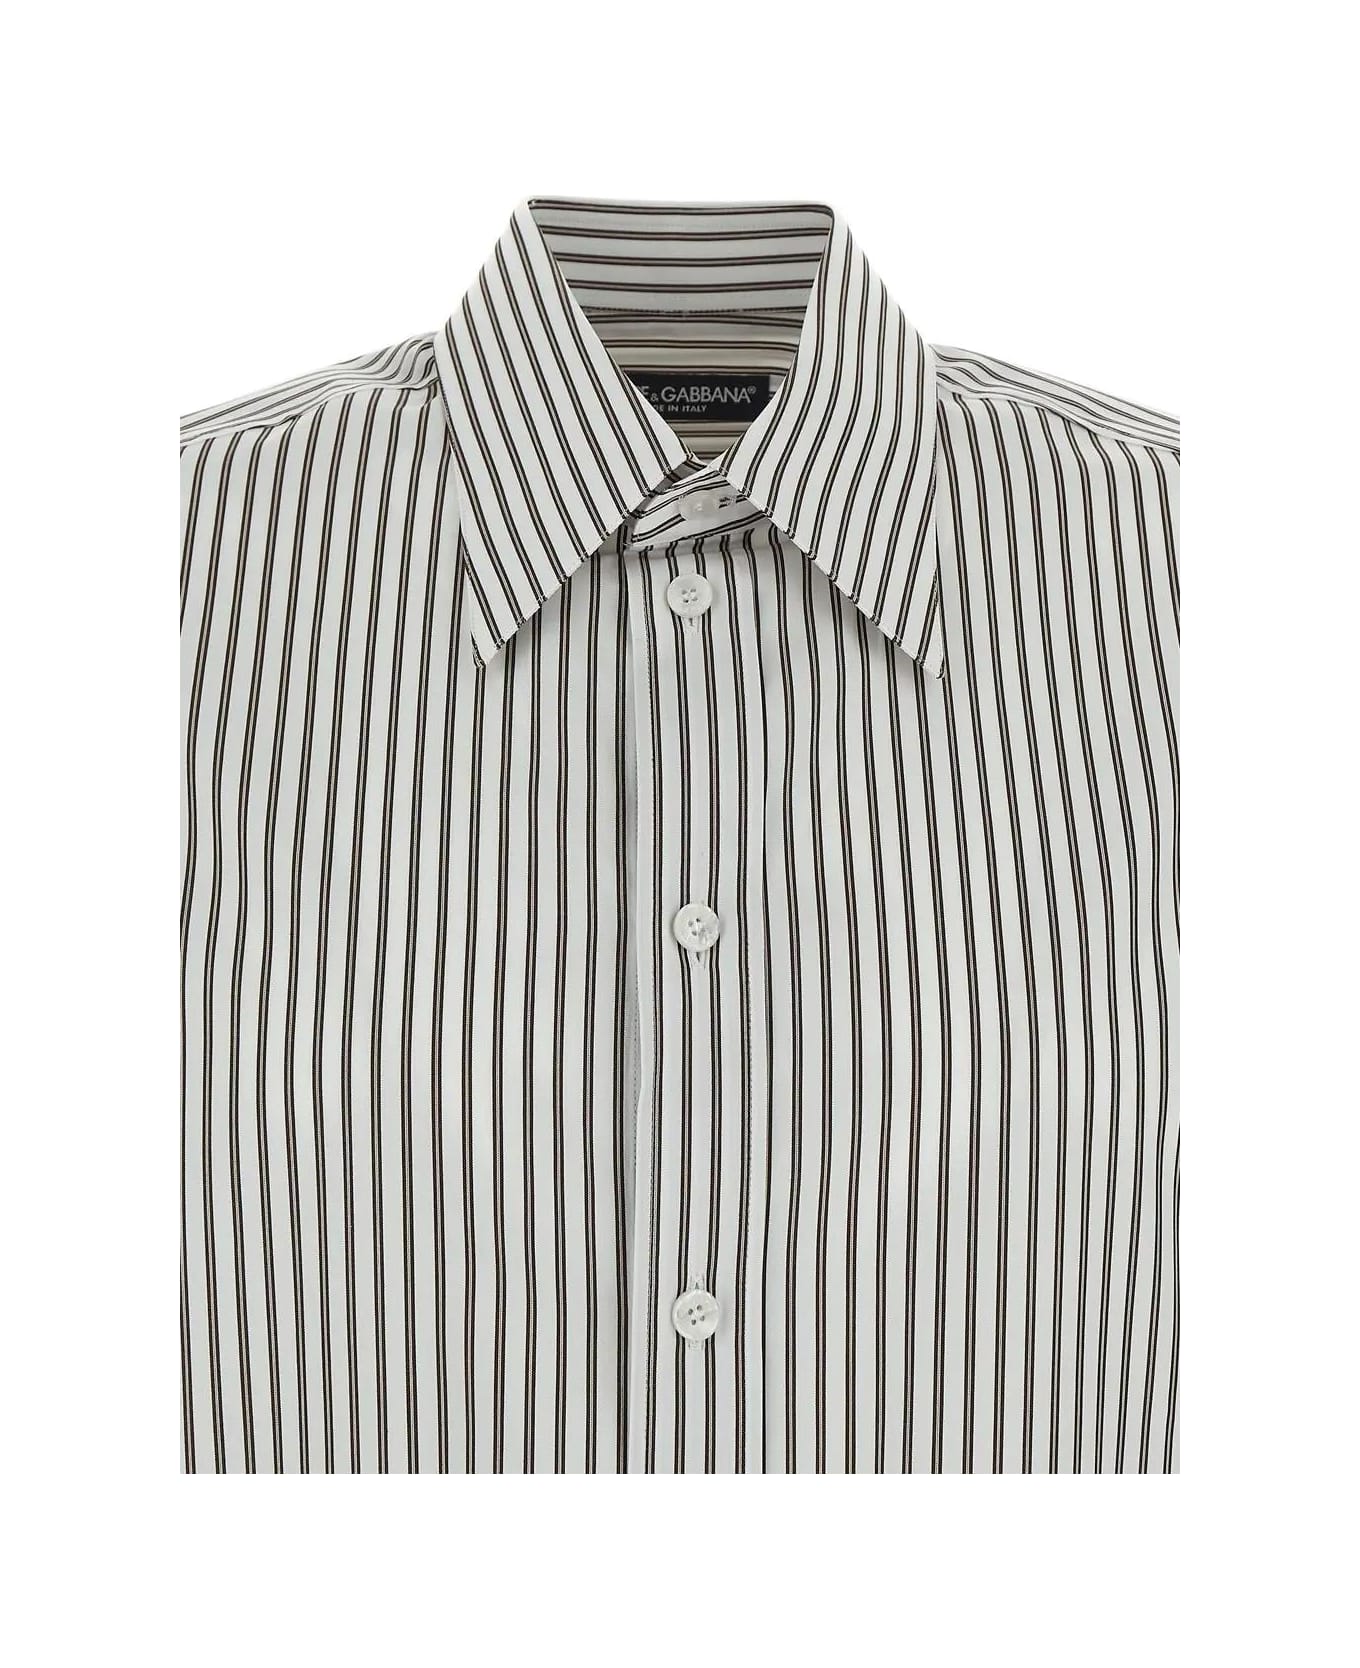 Dolce & Gabbana Cotton Shirt - WHITE/GREY